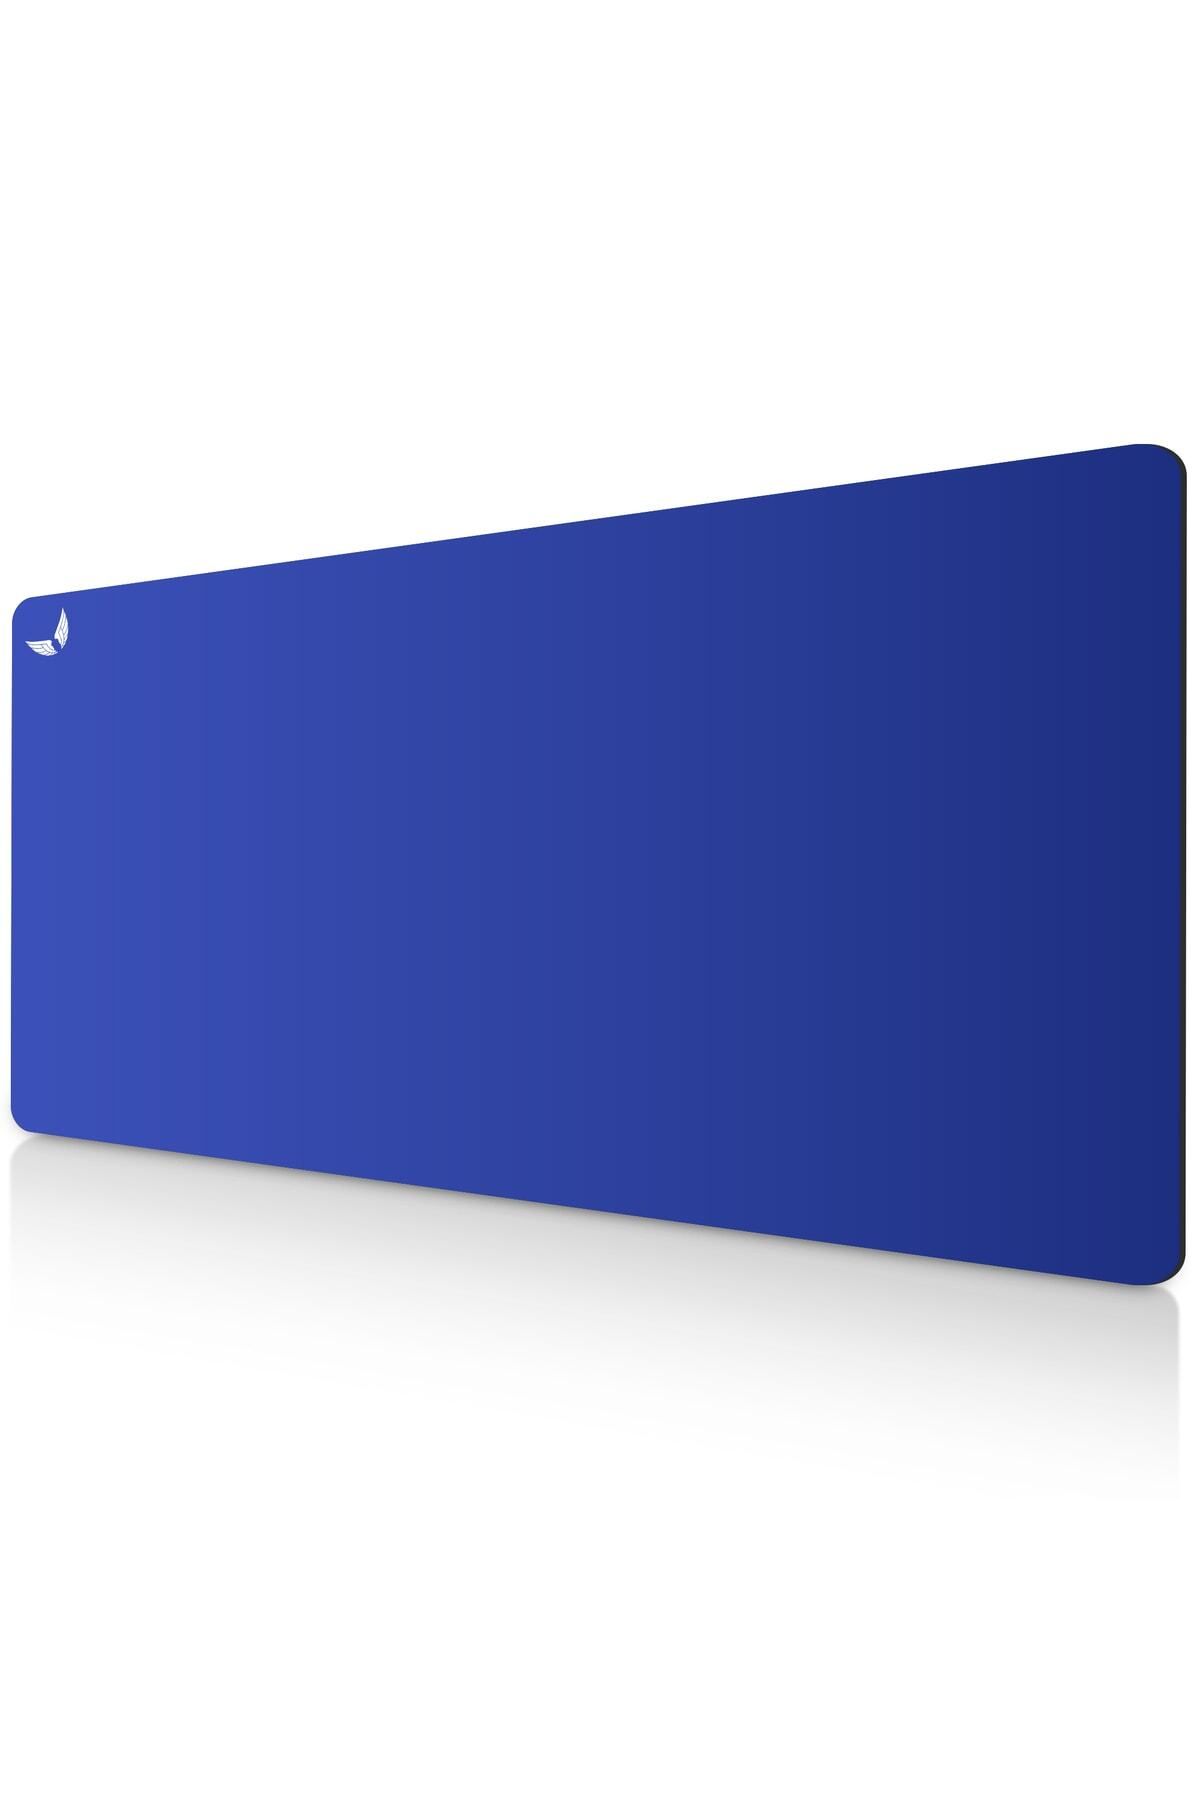 GoLite Mavi Gaming Mouse Pad Oyuncu Uzun Ve Büyük Boy Mousepad 70x30 Cm Klavye Fare Altlığı - Xl